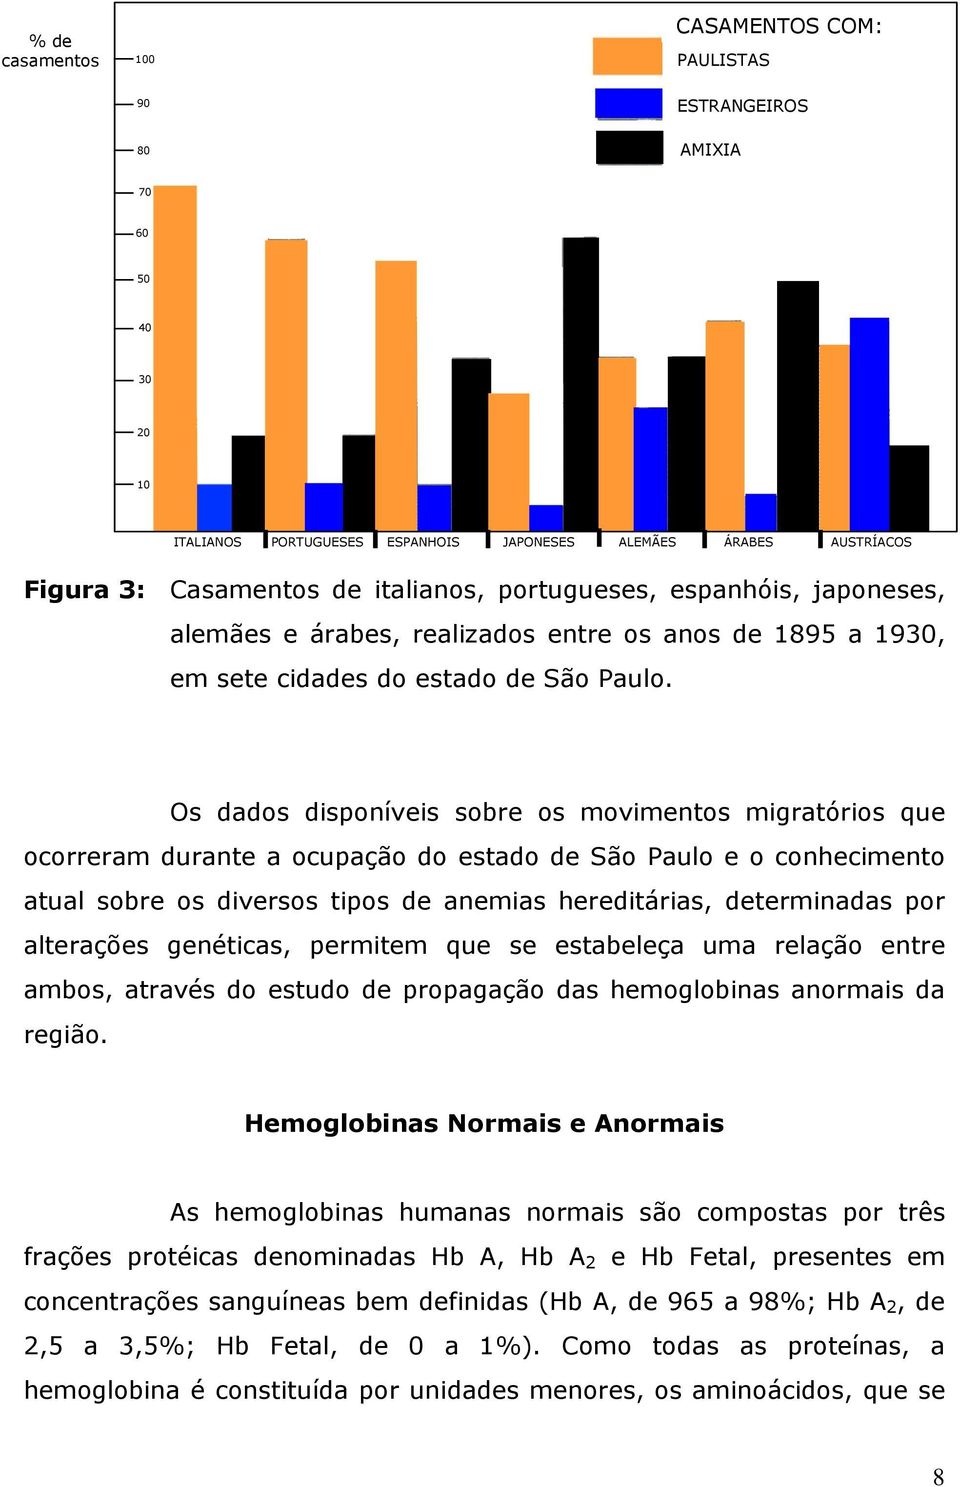 Os dados disponíveis sobre os movimentos migratórios que ocorreram durante a ocupação do estado de São Paulo e o conhecimento atual sobre os diversos tipos de anemias hereditárias, determinadas por